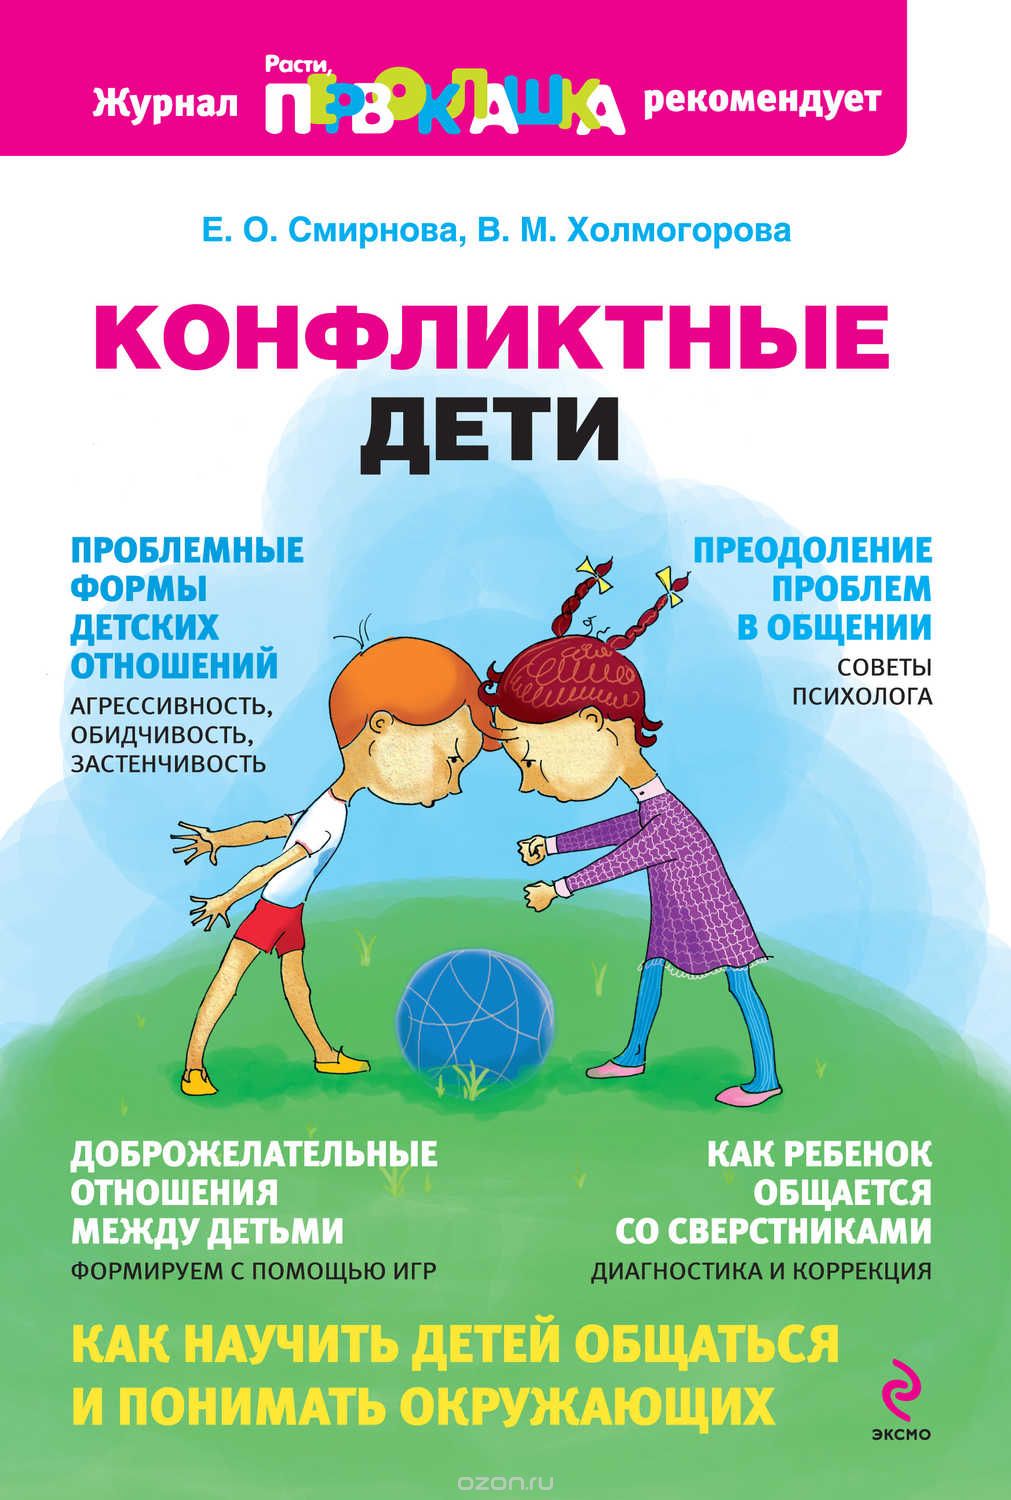 Обложка книги "Конфликтные дети"